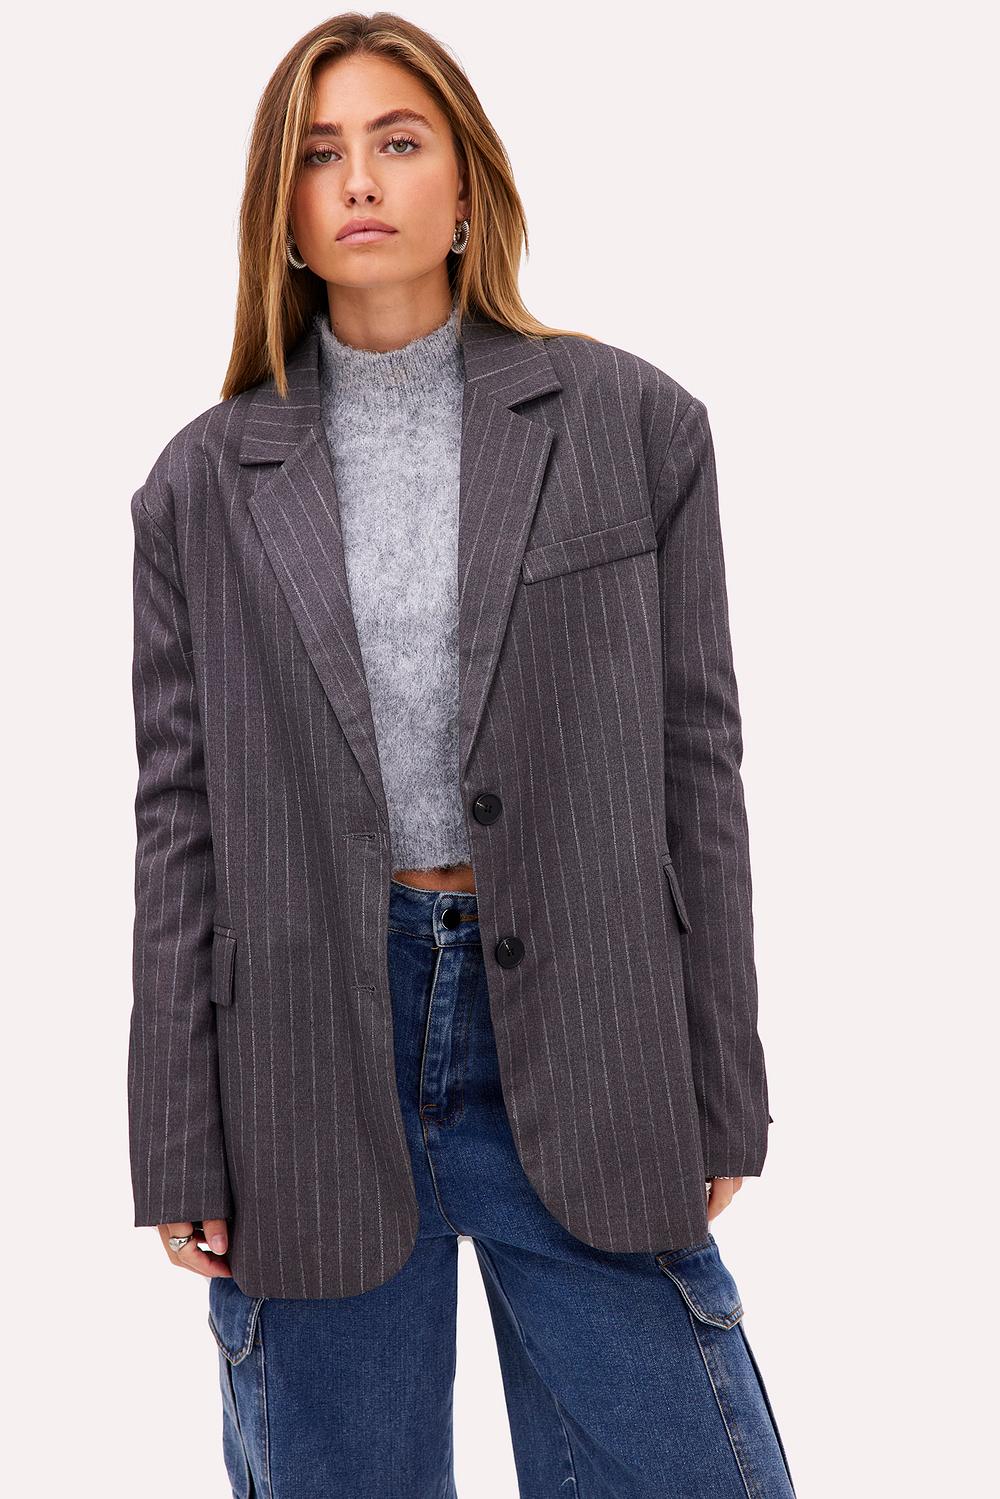 Grey blazer with stripes